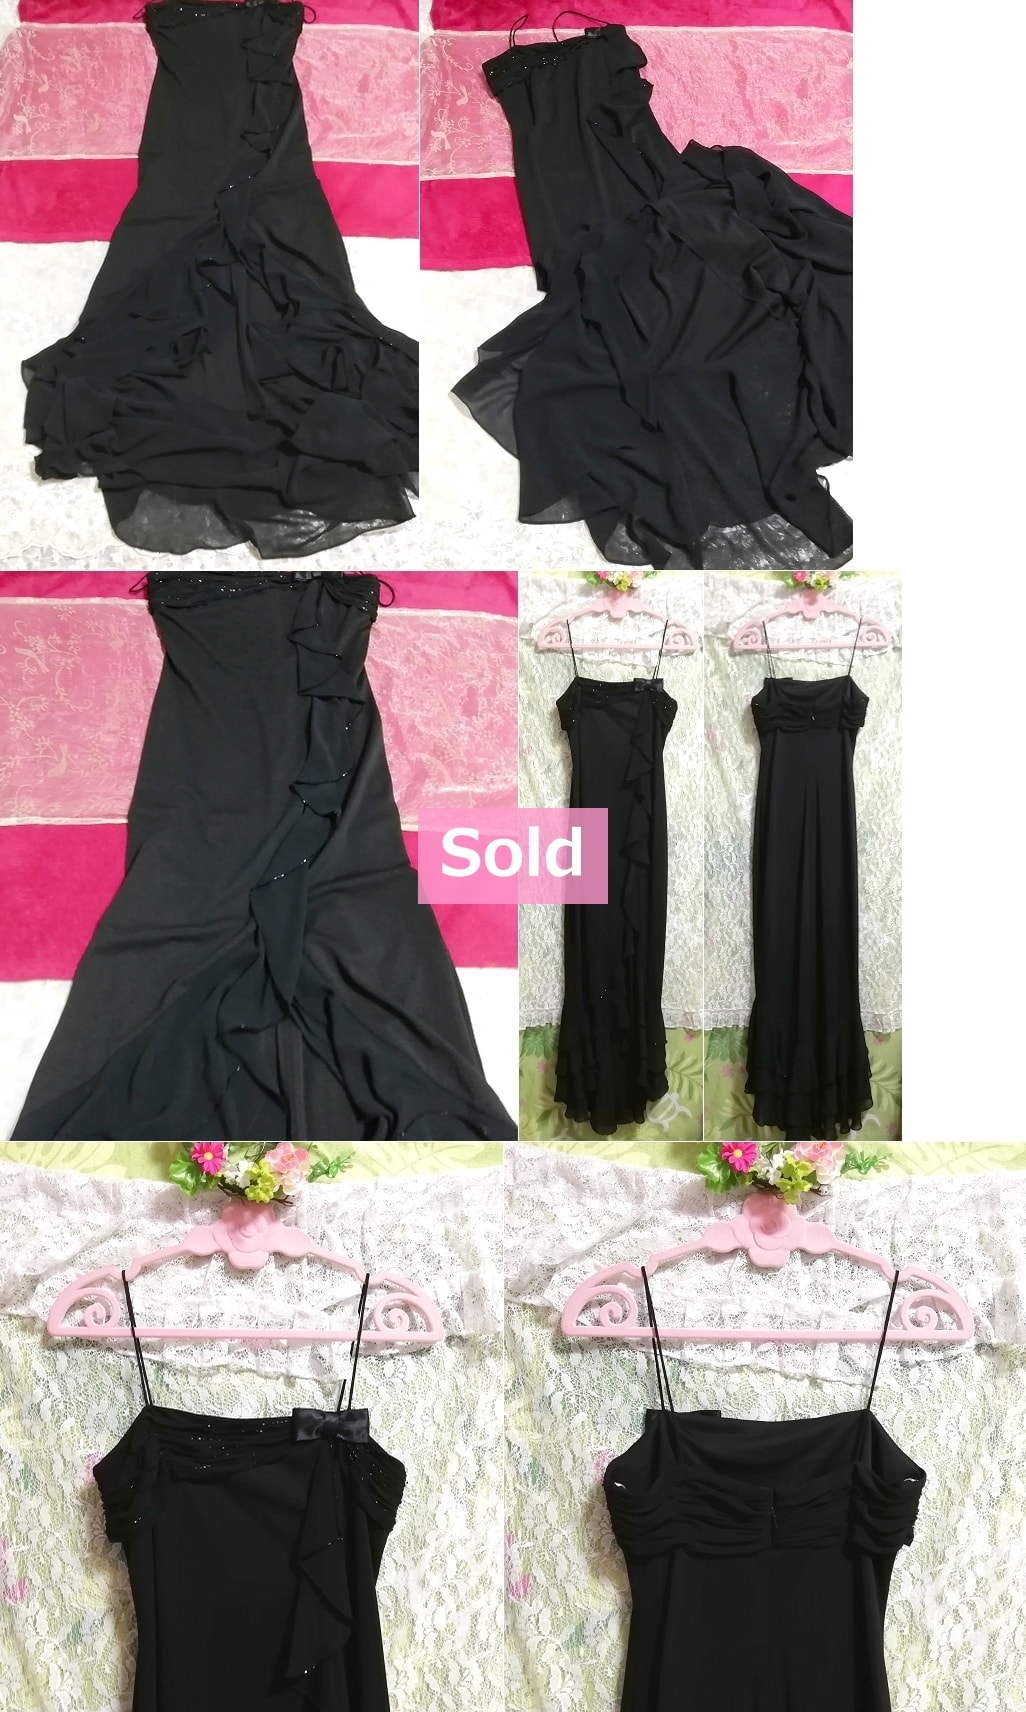 DELARU ماكاو أسود بروتيل ماكسي قطعة واحدة فستان ، فستان وتنورة طويلة ومقاس M.